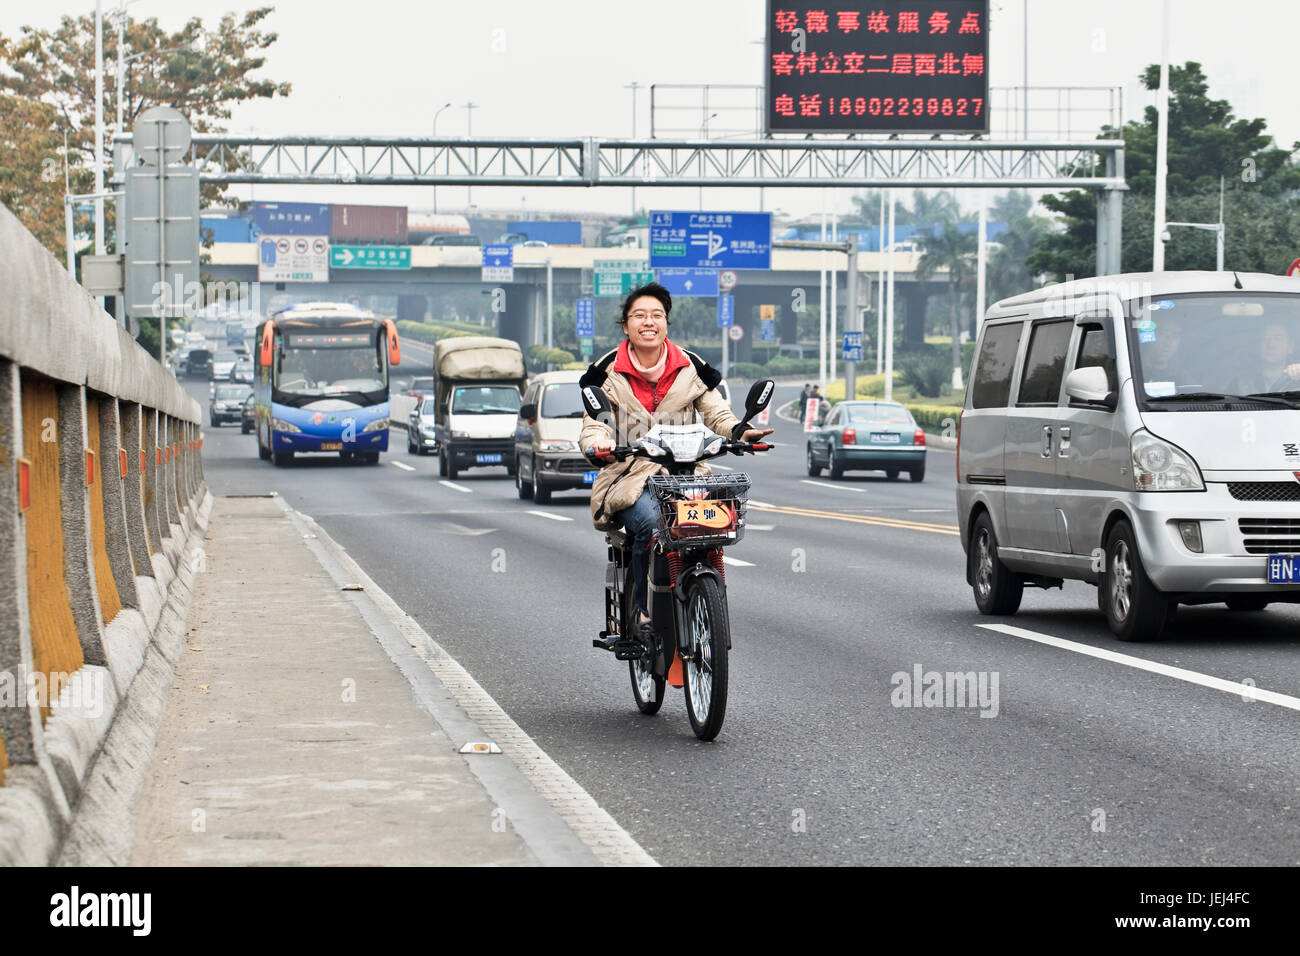 GUANGZHOU-FEB. 21, 2012. Fröhliches chinesisches Mädchen, das auf einer belebten Straße ein Elektrofahrrad fährt. Stockfoto